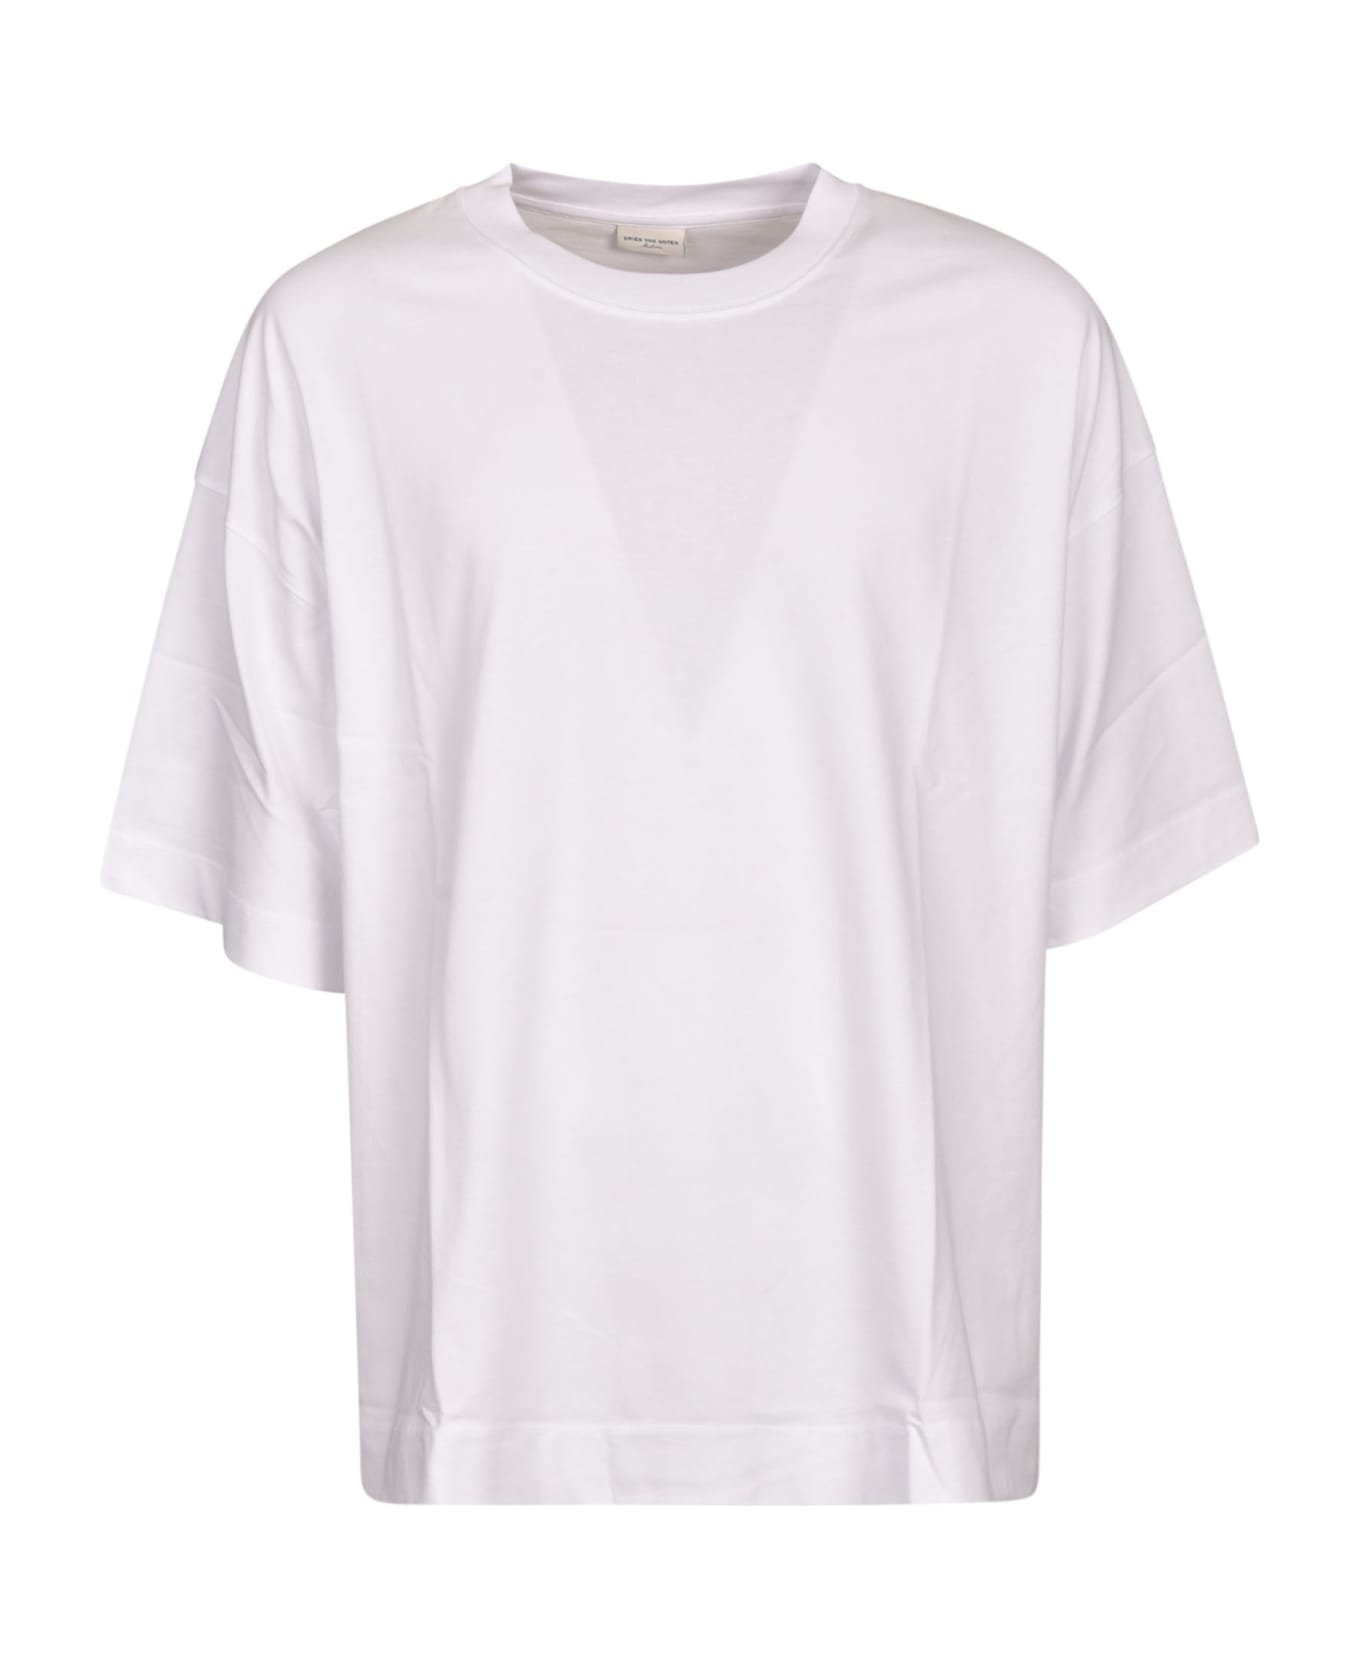 Dries Van Noten Round Neck T-shirt - White シャツ